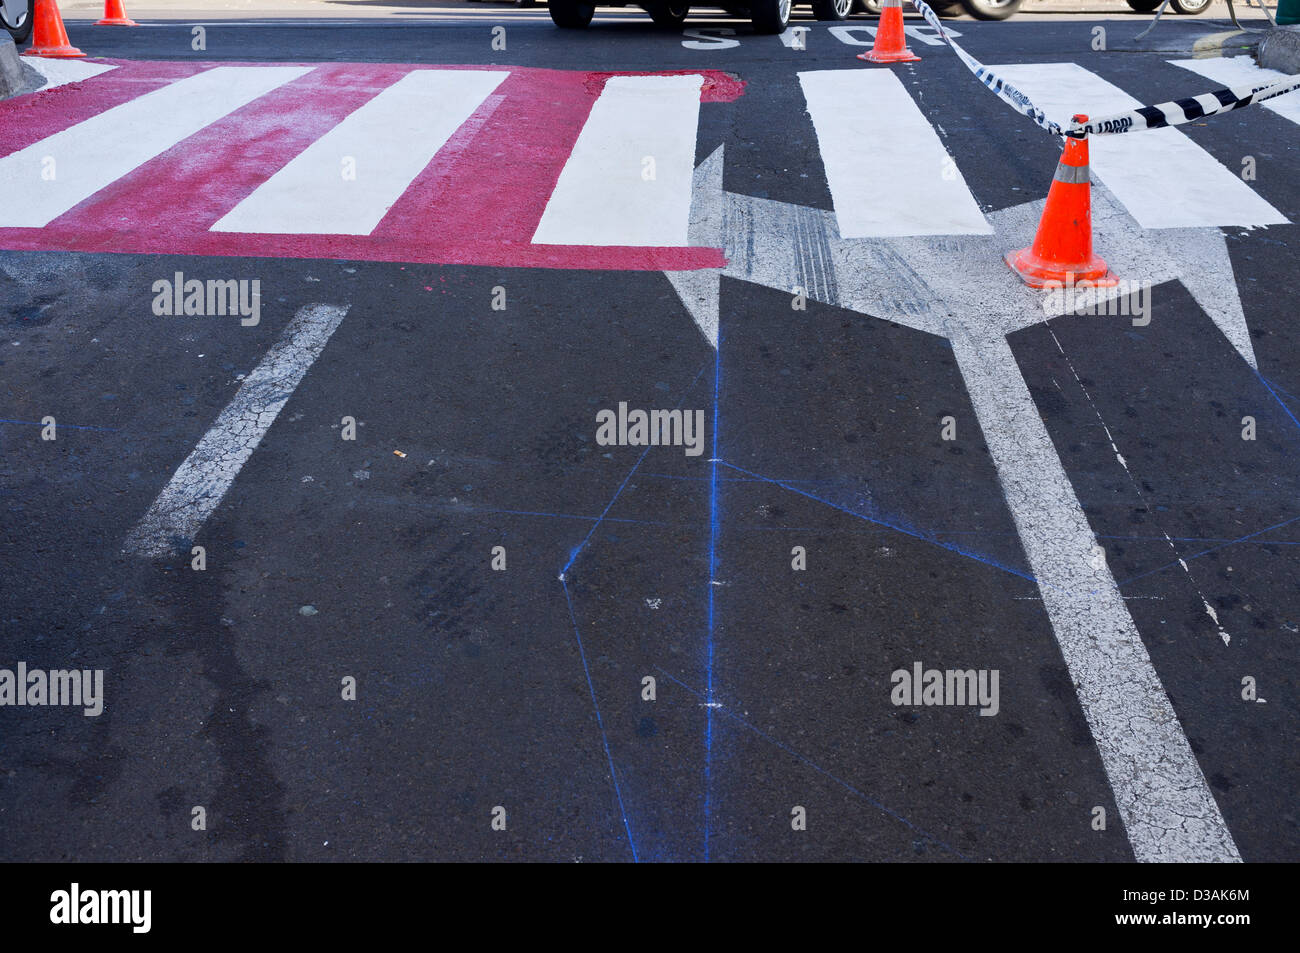 Nuevos puntos de cruce peatonal está pintada de blanco y rojo Foto de stock